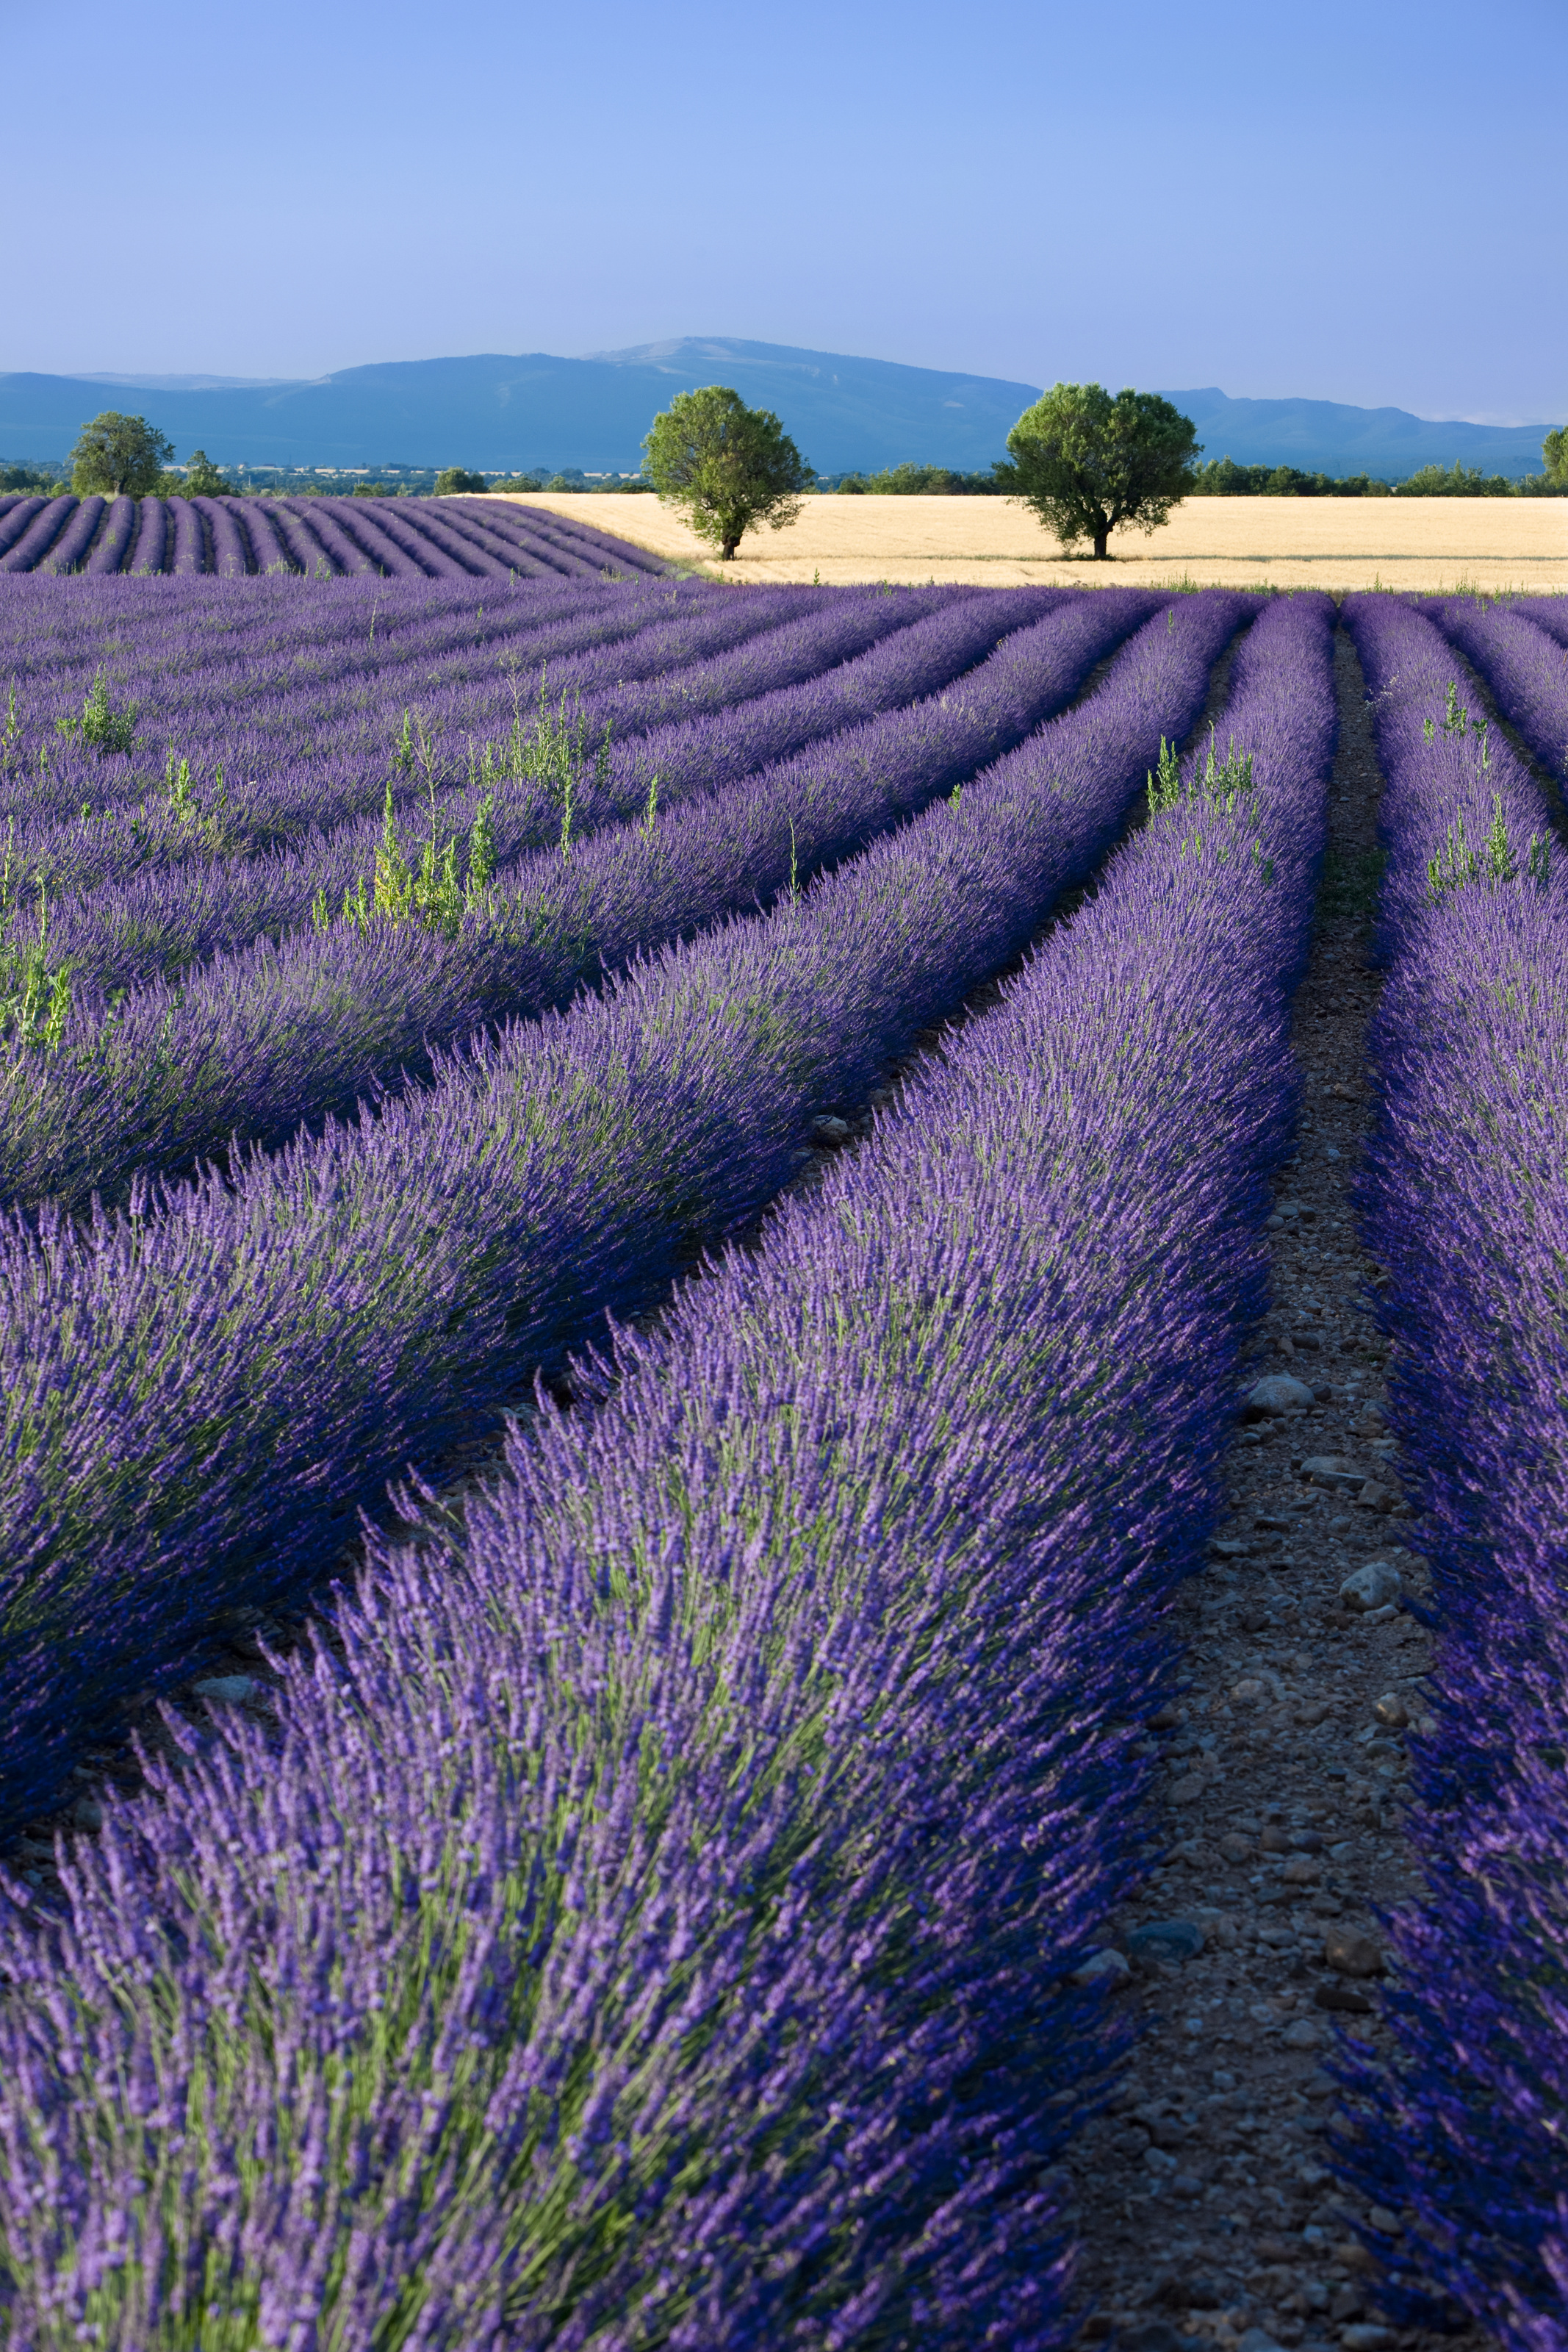 16:9 Landscape Wallpaper (7) - Provence, France | Wallpaper … | Flickr